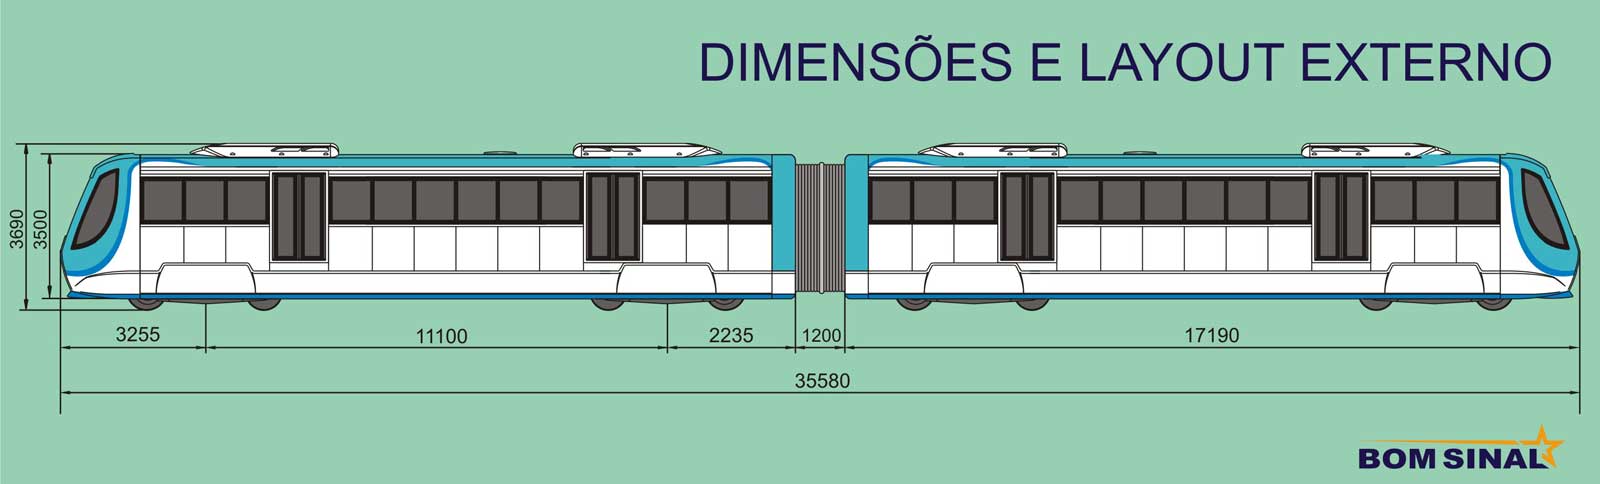 Desenho técnico: dimensões e configuração externa do trem